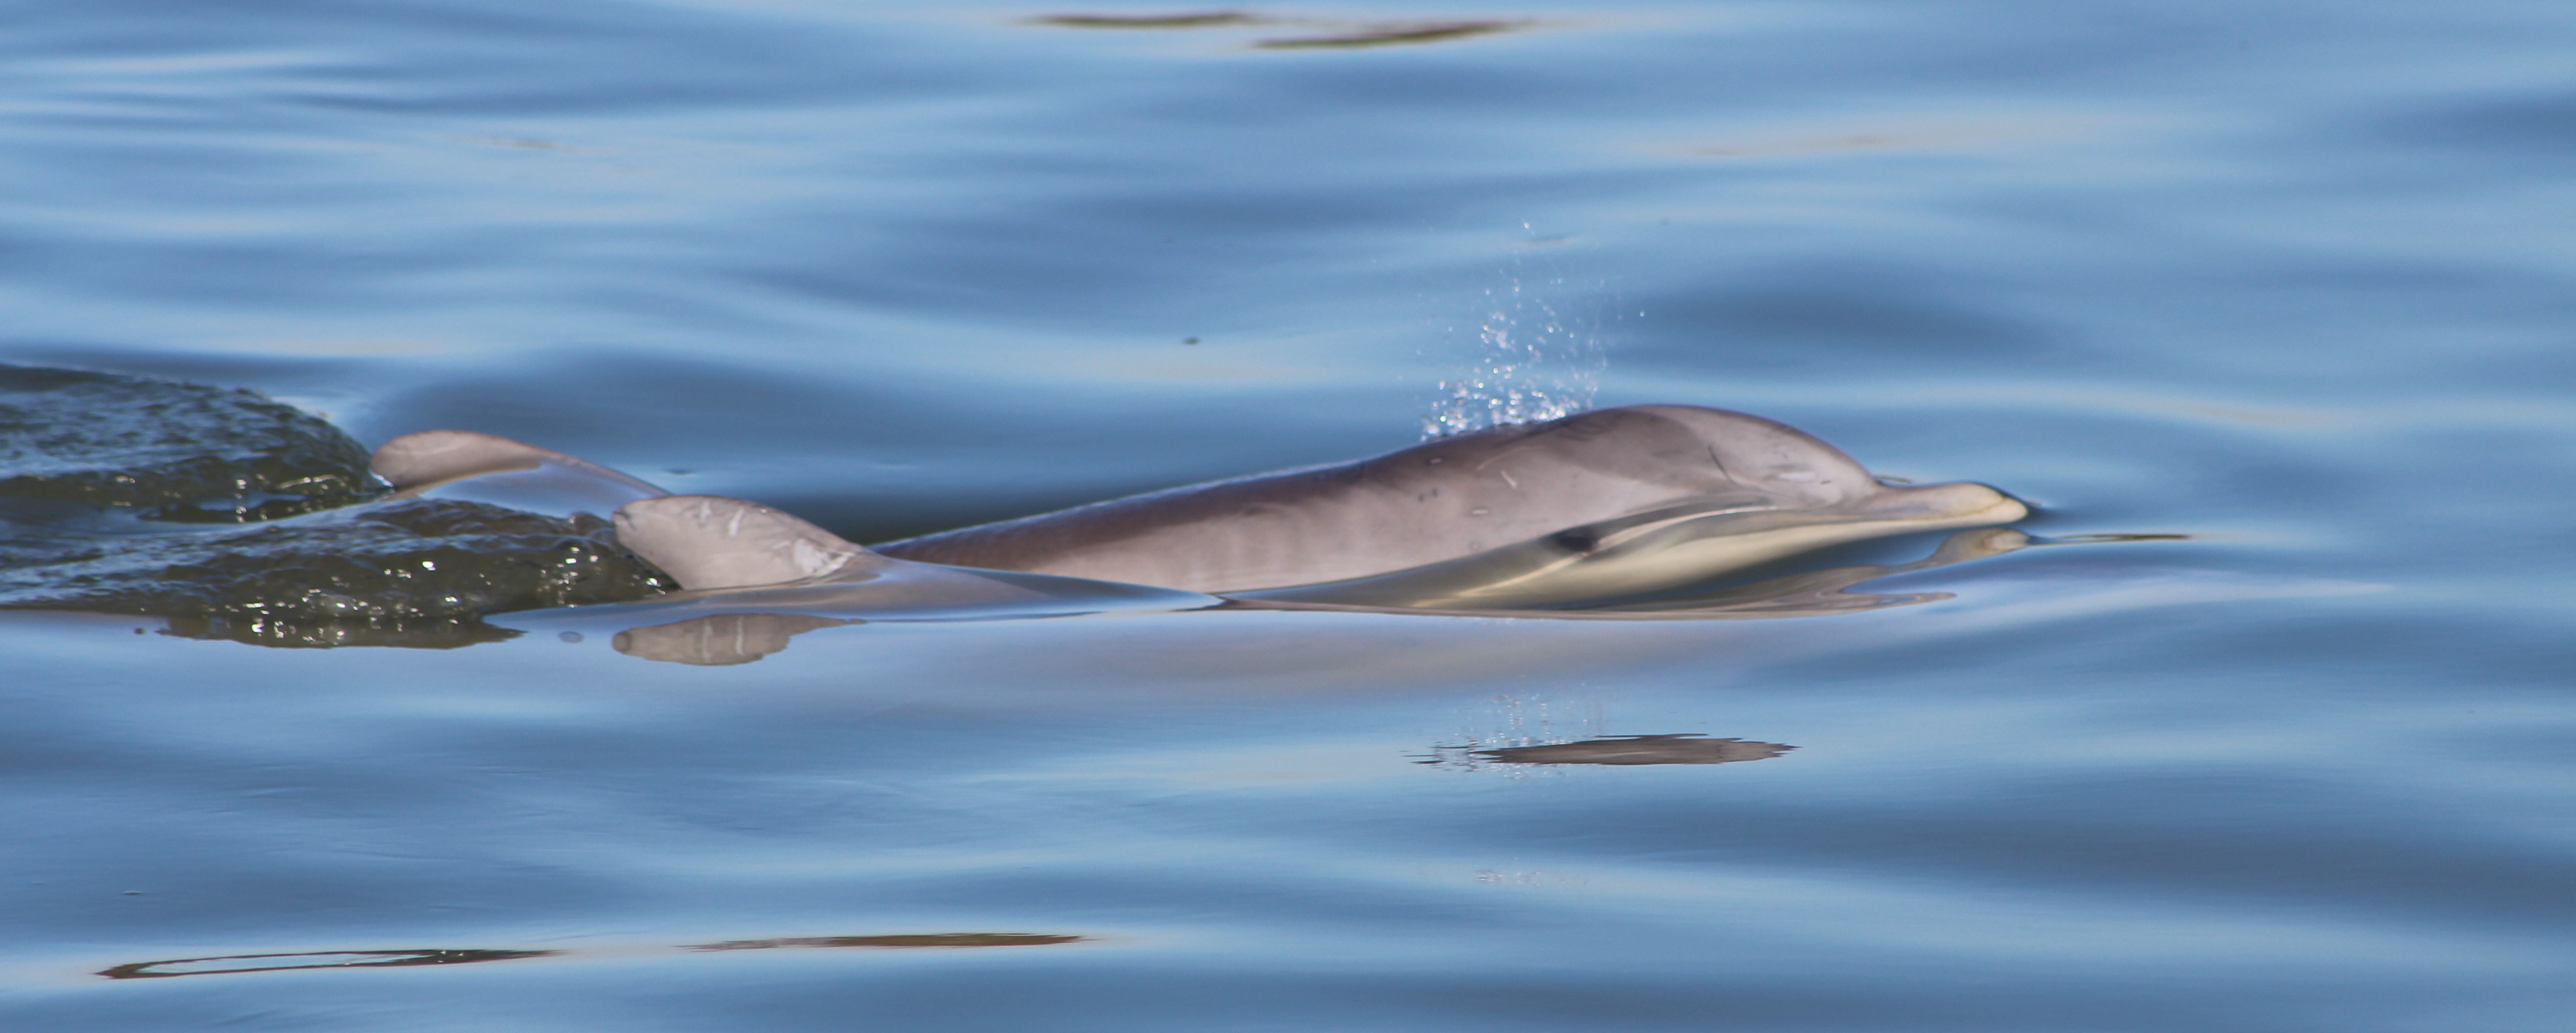 dolphin eco tour charleston sc